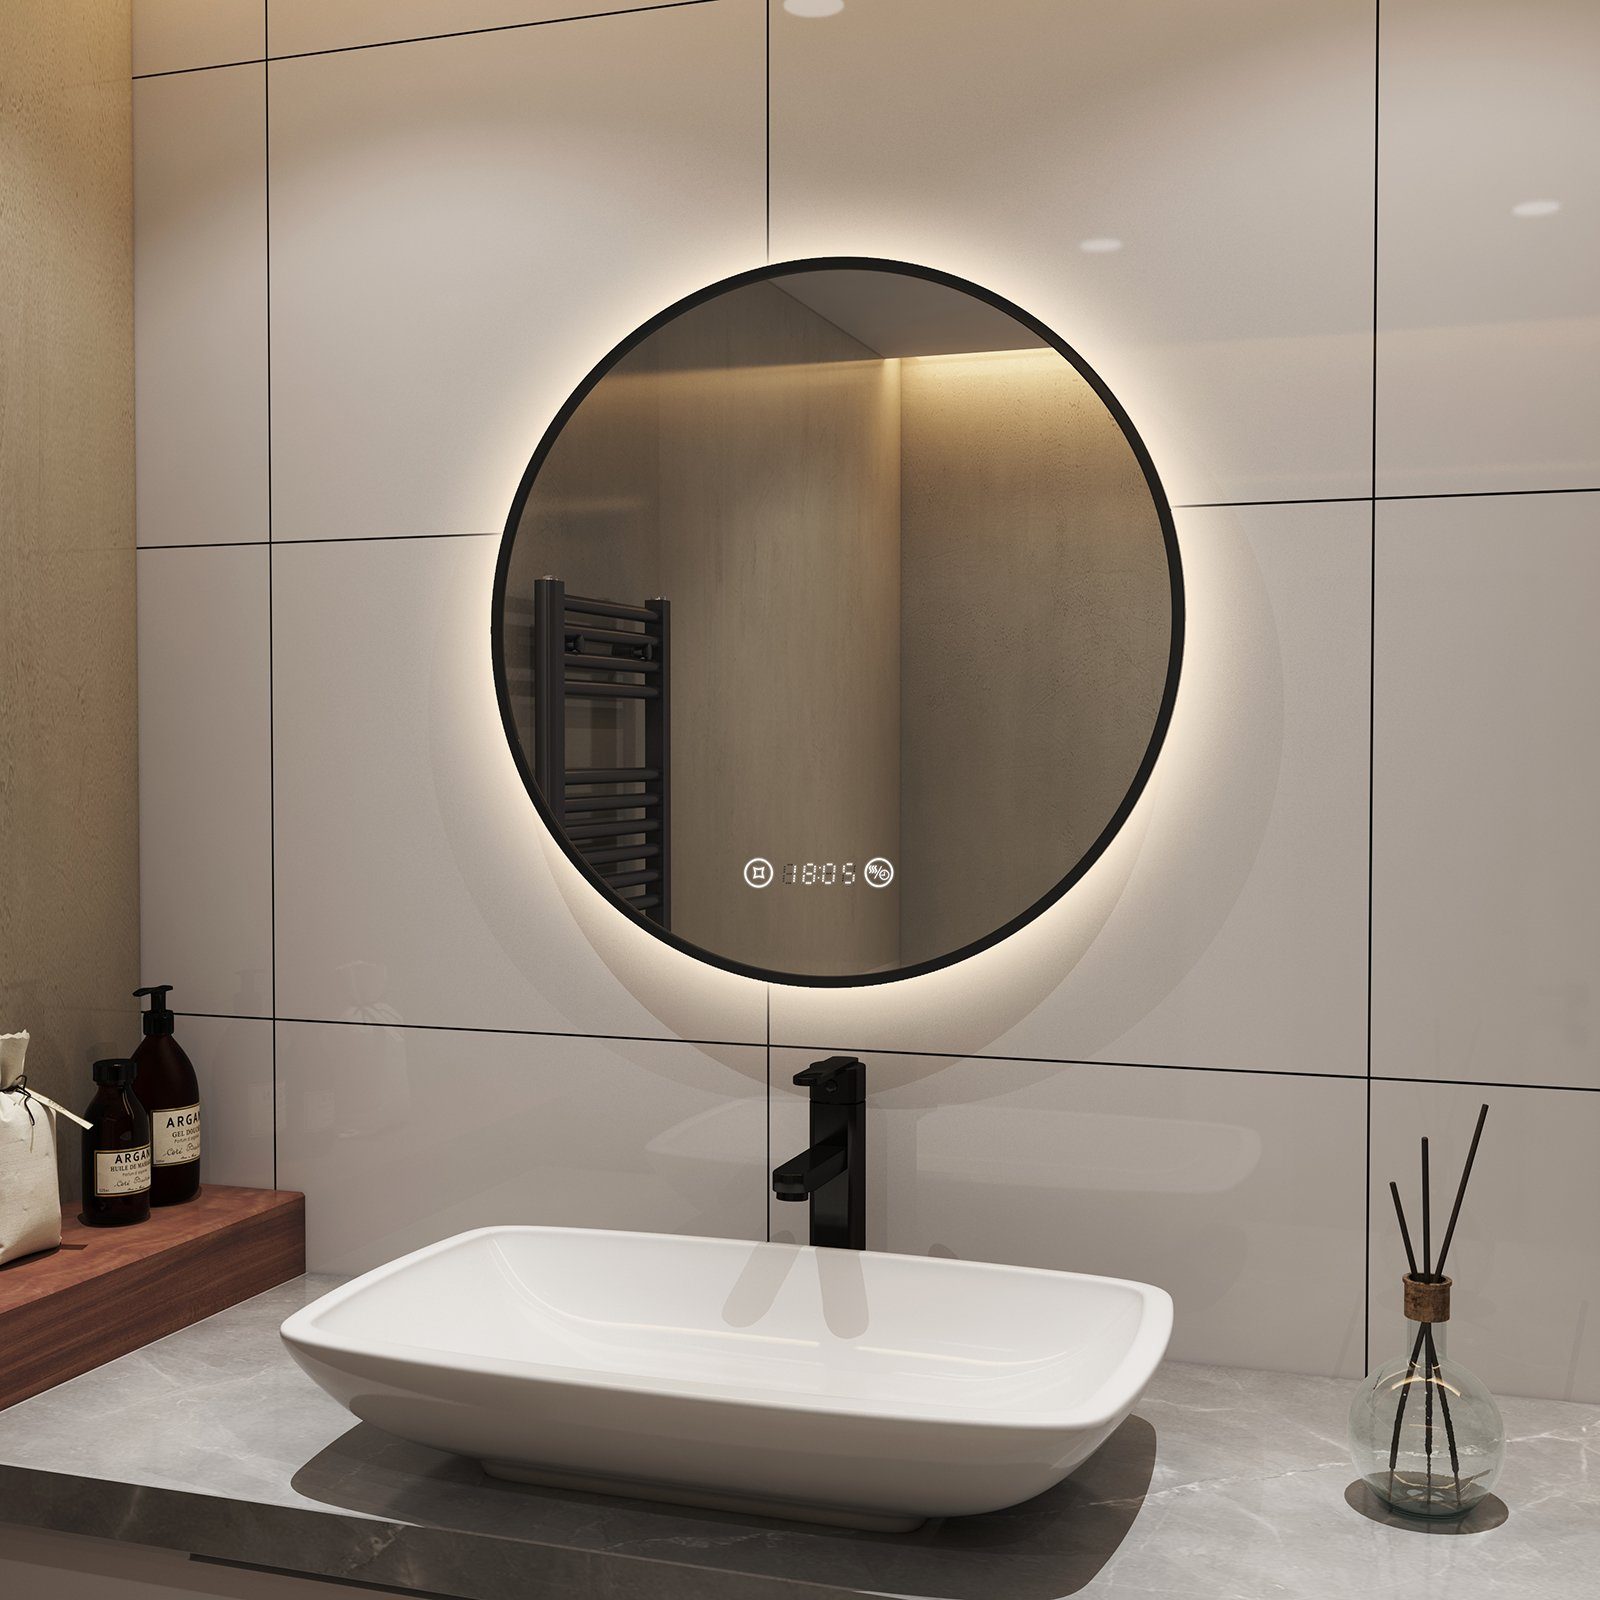 S'AFIELINA Badspiegel Runder LED Einstellbar Schwarz Wandspiegel, 4300K,Helligkeit TouchSchalter,Beschlagfrei,Neutralweiß Energiesparender Badezimmerspiegel